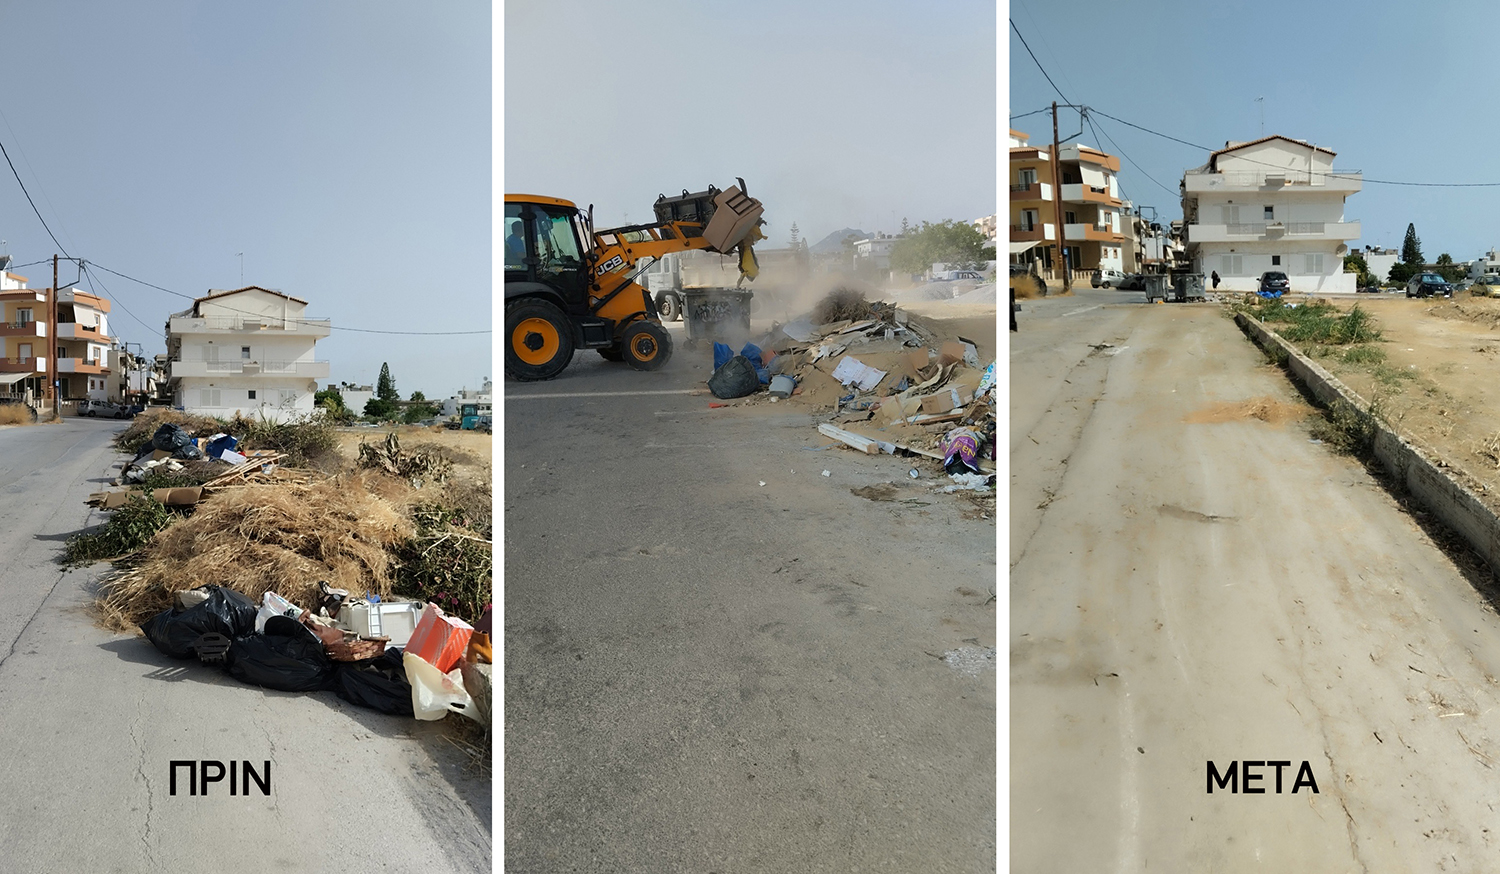 Παρέμβαση σε 120 σημεία συγκέντρωσης απορριμμάτων από τον δήμο Ηρακλείου